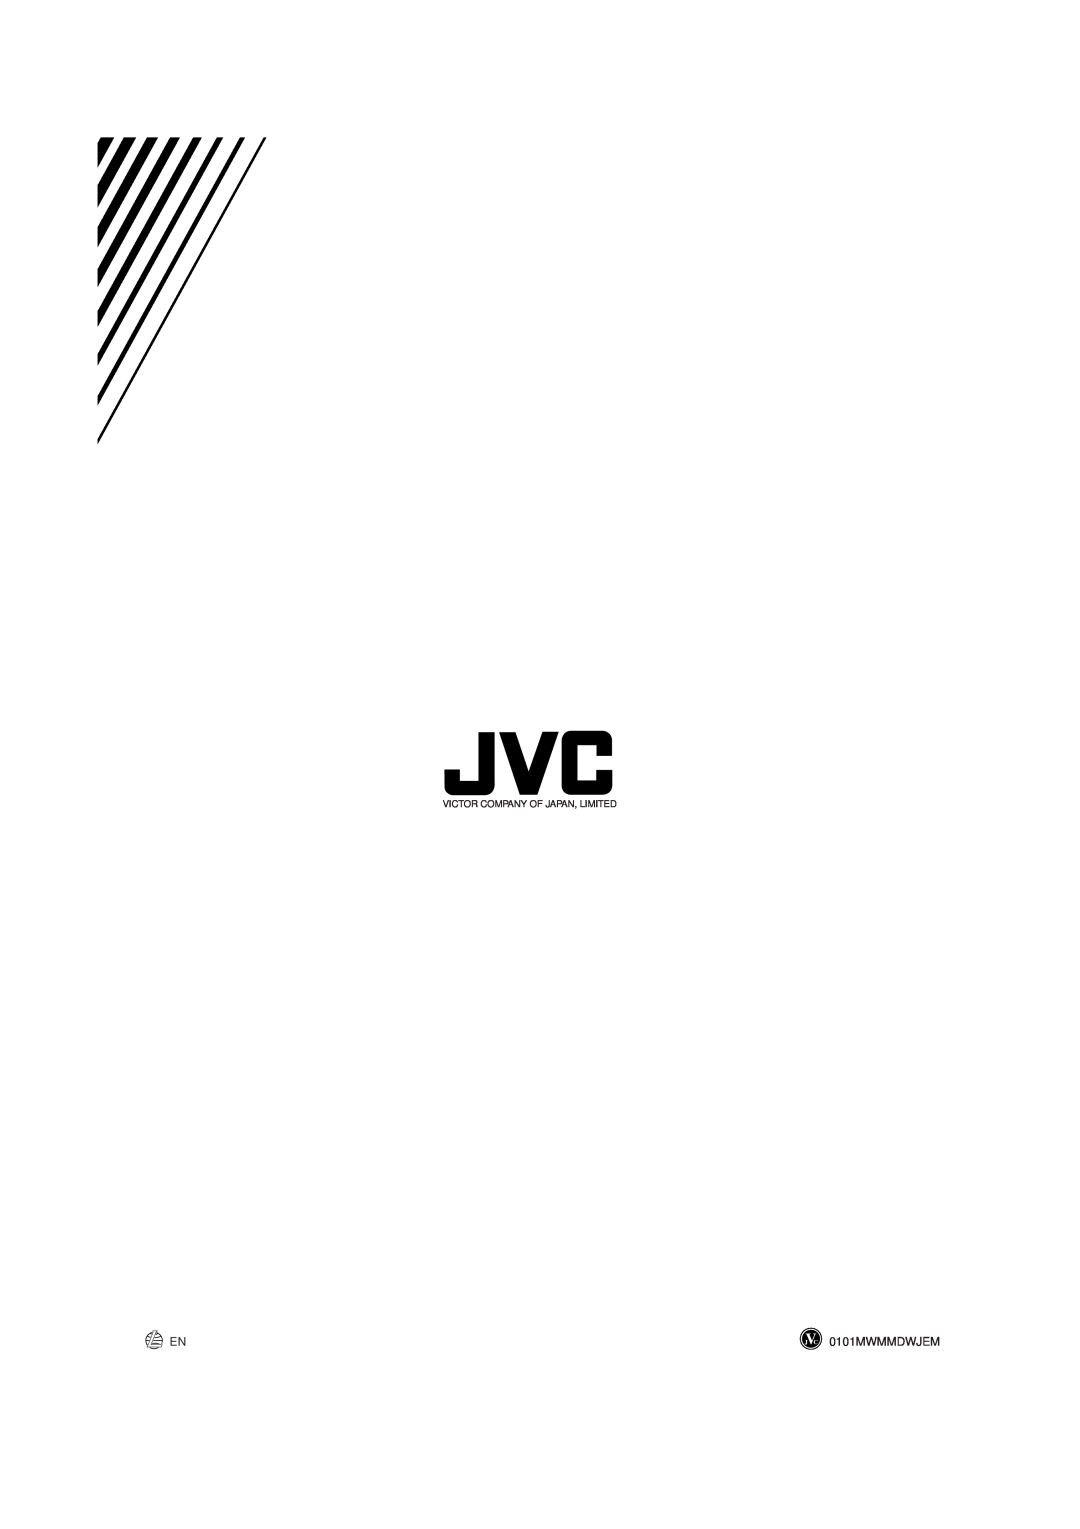 JVC MX-GT70 manual 0101MWMMDWJEM, Victor Company Of Japan, Limited 